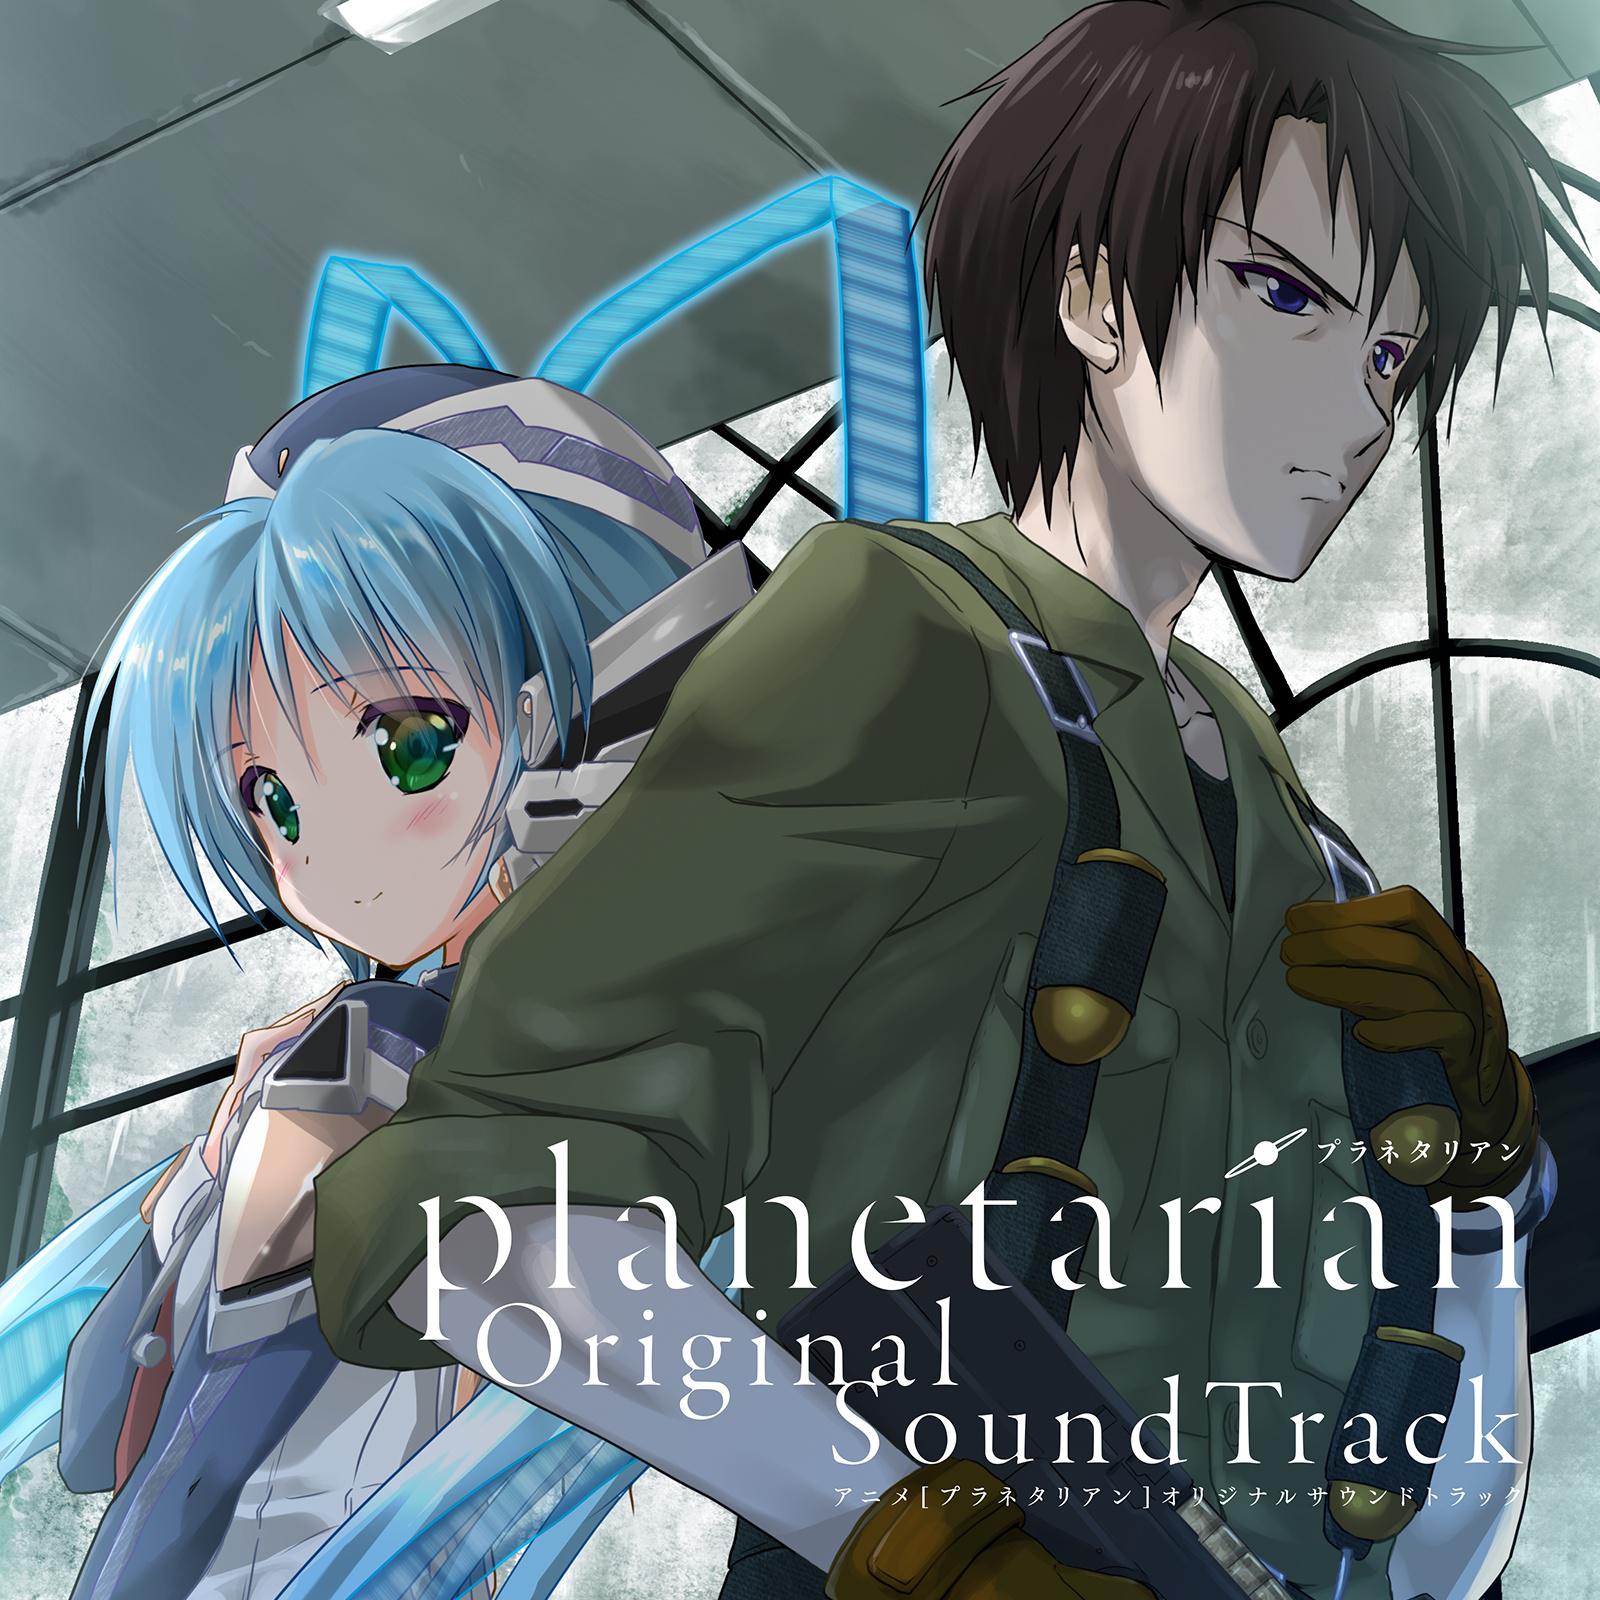 アニメ「planetarian」Original SoundTrack专辑